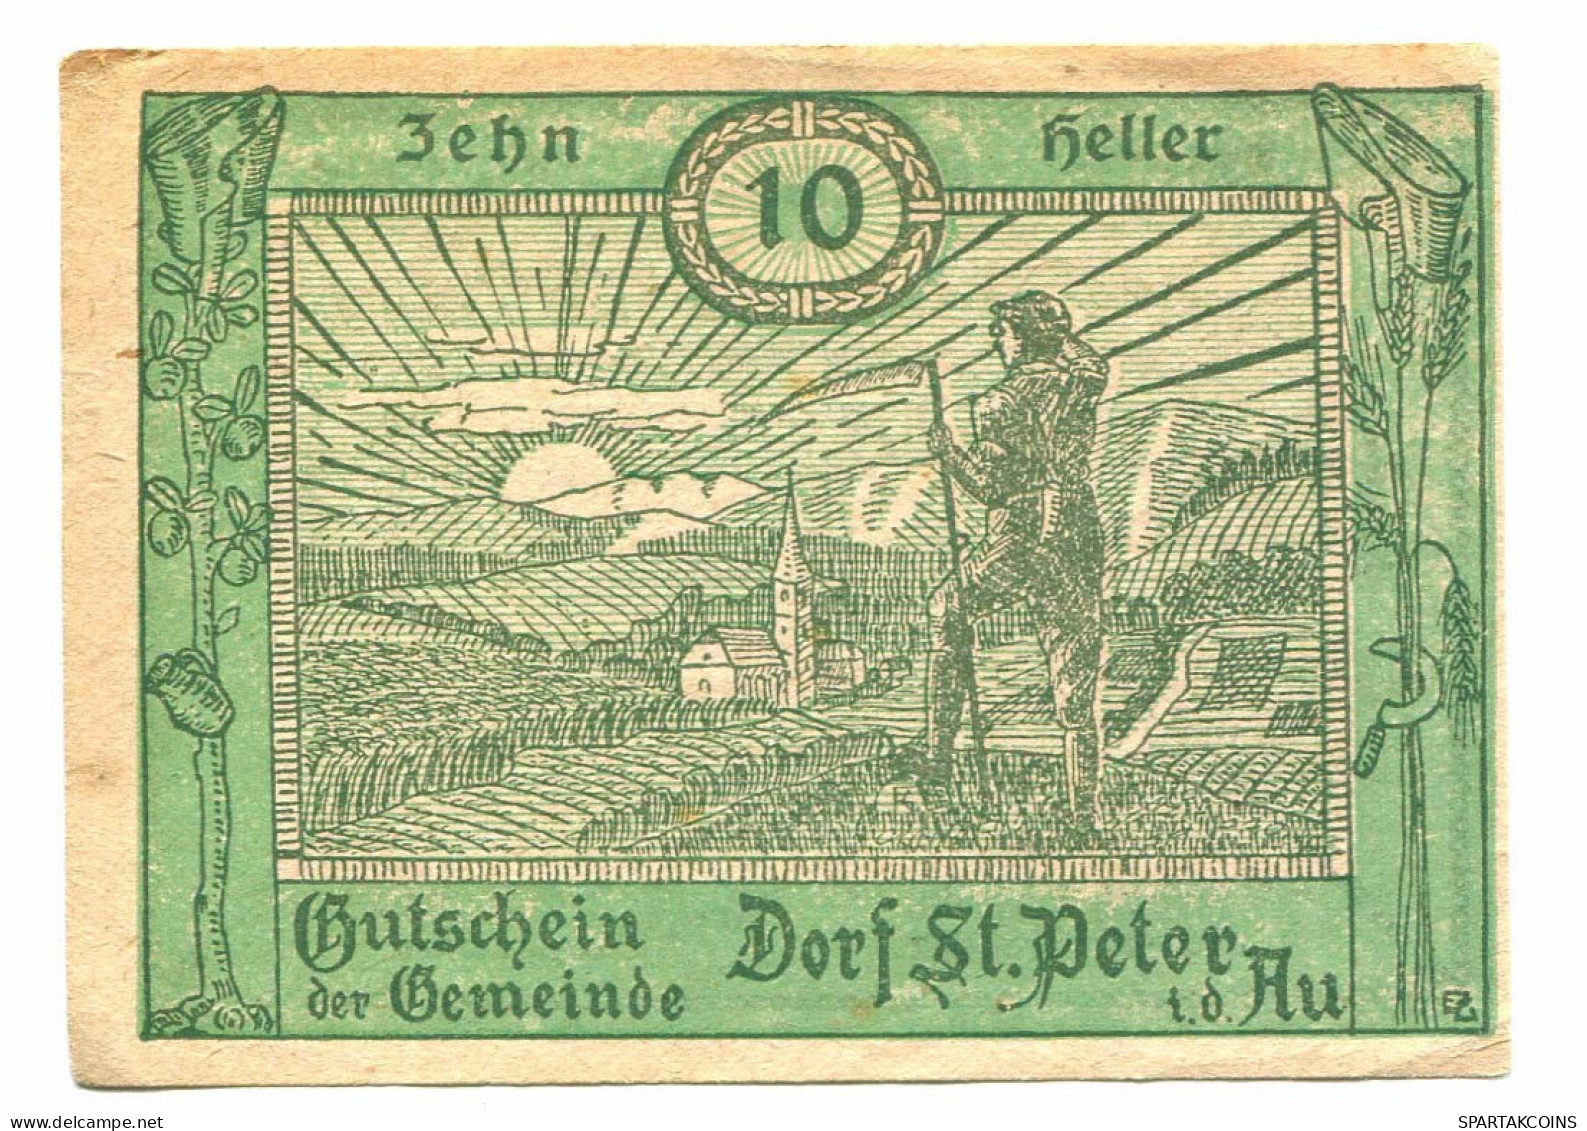 10 Heller 1920 DORF ST. PETER Österreich UNC Notgeld Papiergeld Banknote #P10760 - [11] Local Banknote Issues